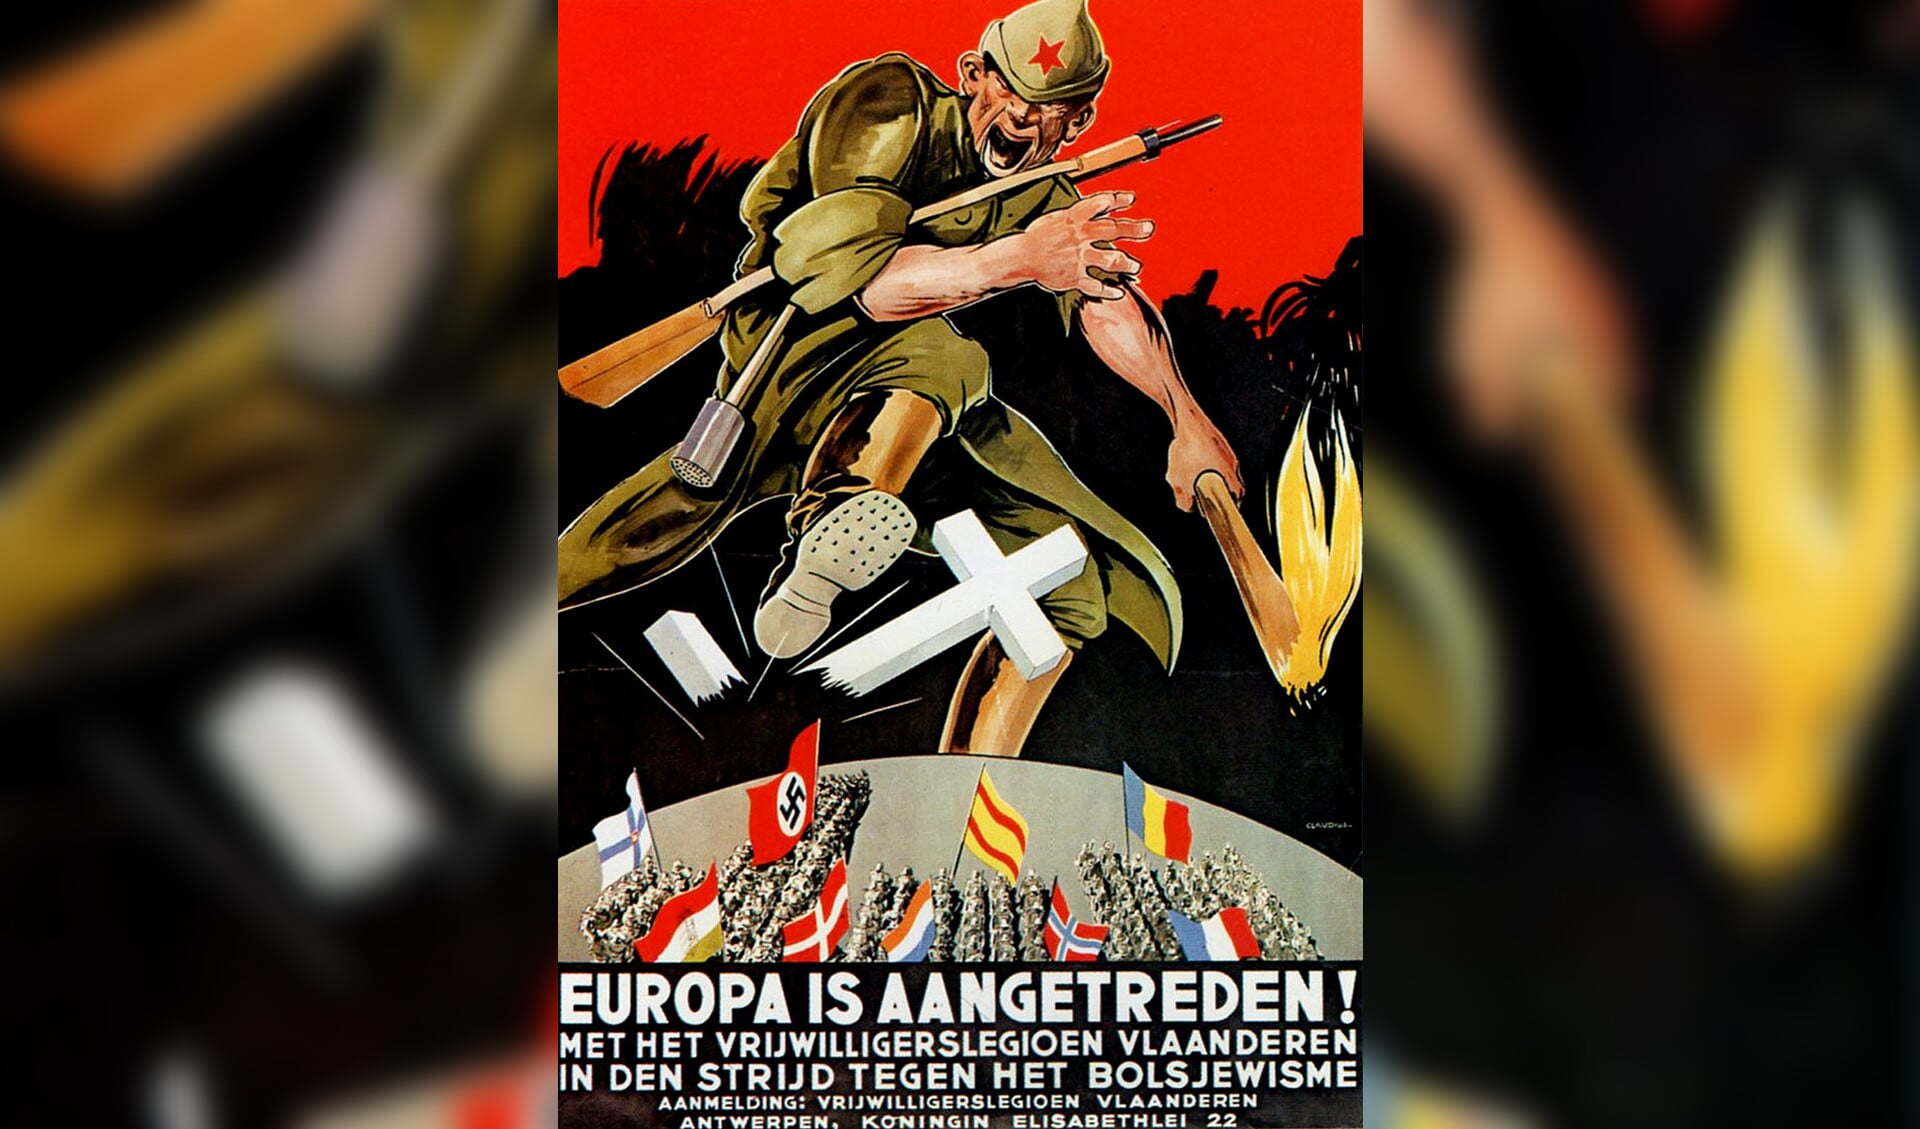 Oproep van de nazi’s om zich te melden voor de strijd tegen het communisme in de Sovjet-Unie.